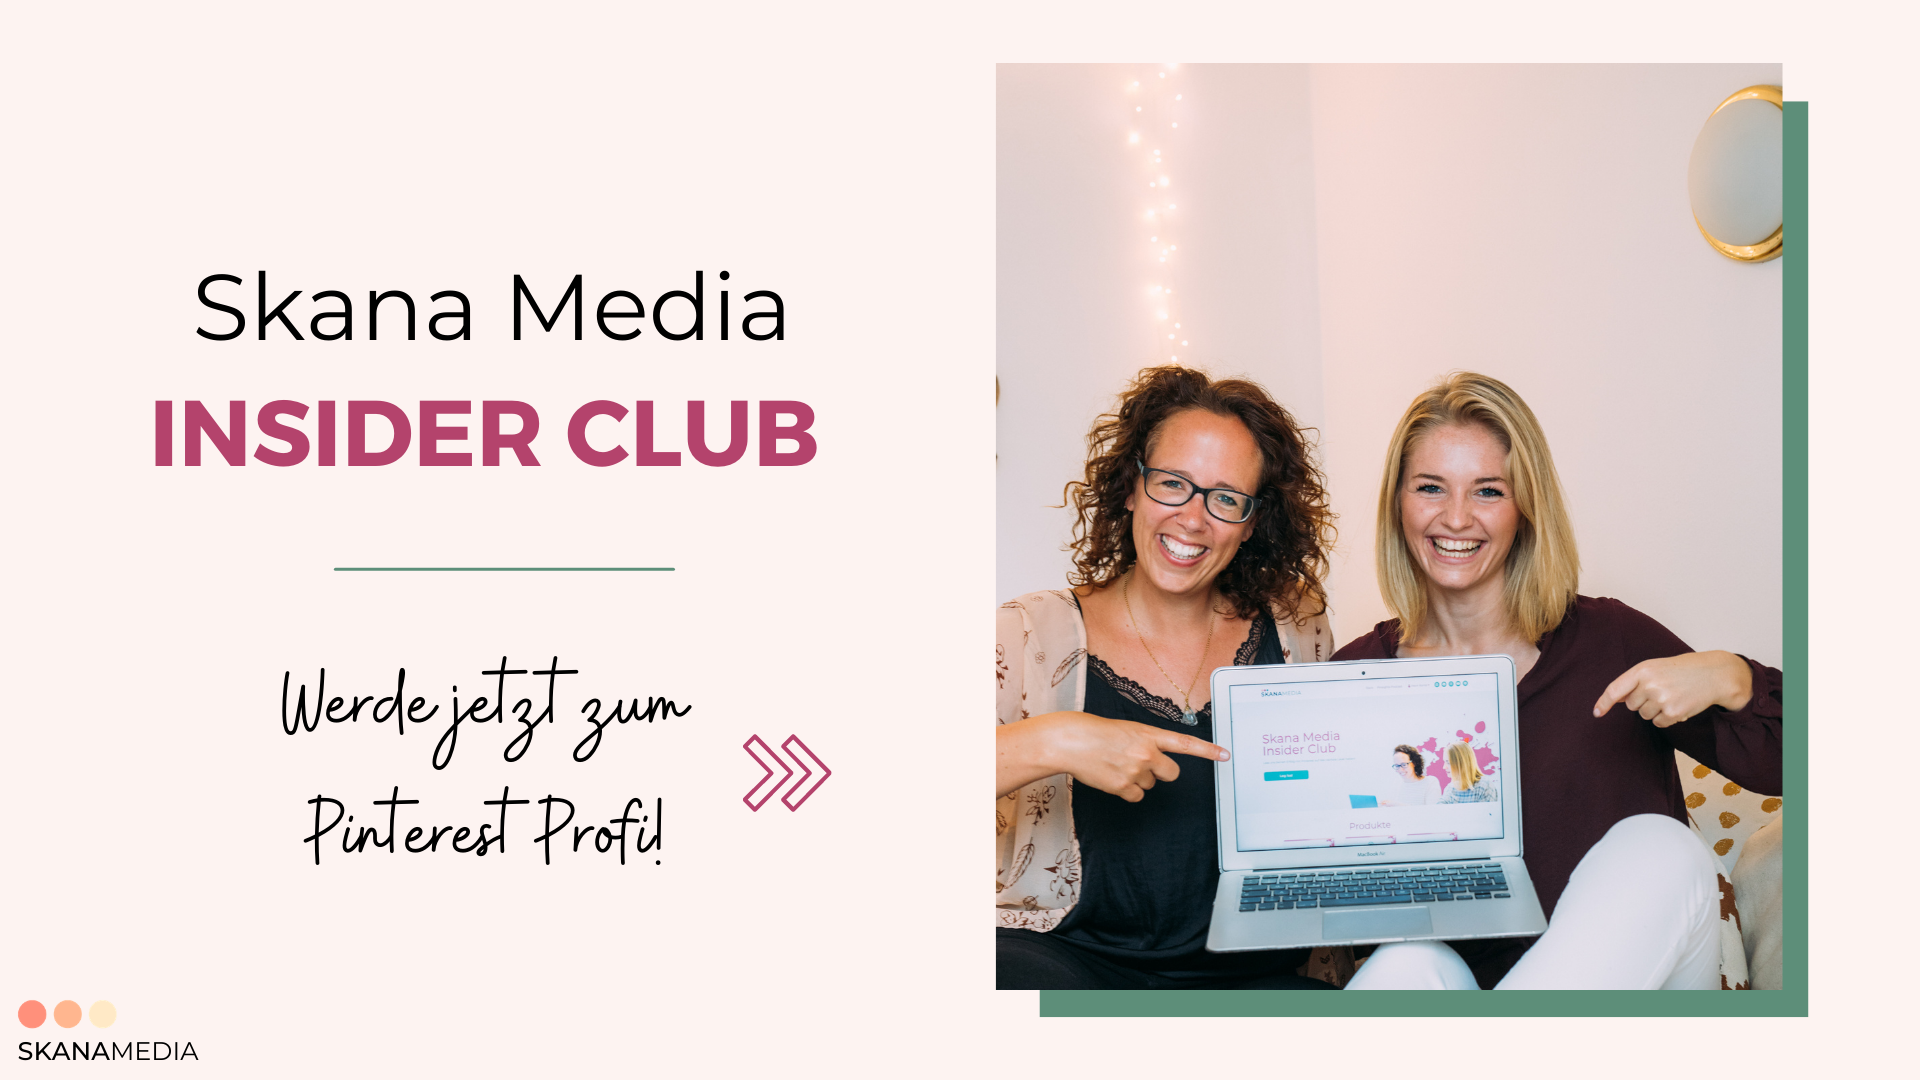 Skana Media Insider Club-Mitglieder Bereich für Pinterest Fortgeschrinnene-Pinterest Strategien-Online Kurs-Q&A